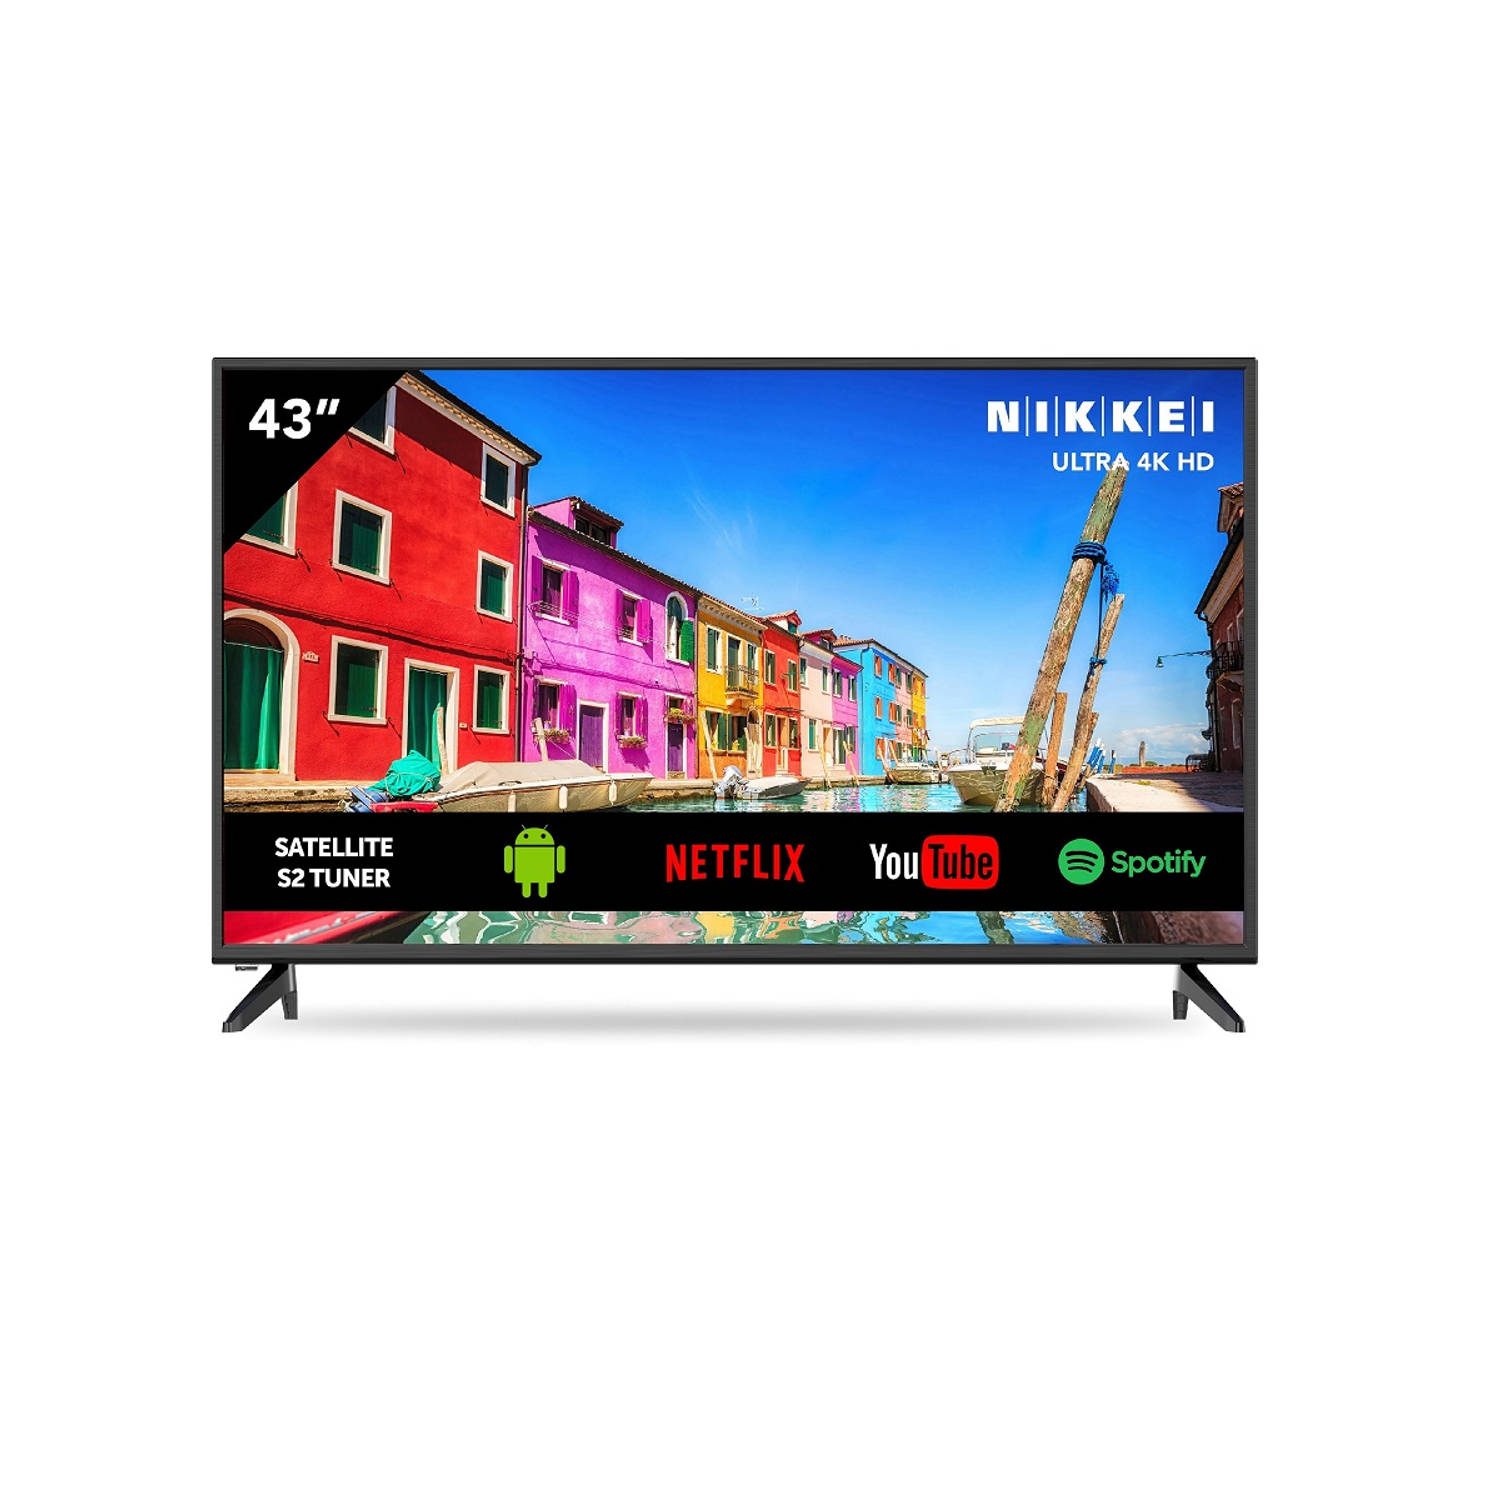 Nikkei Nu4318s Ultra Hd/ 4k 43 Inch Smart Tv aanbieding